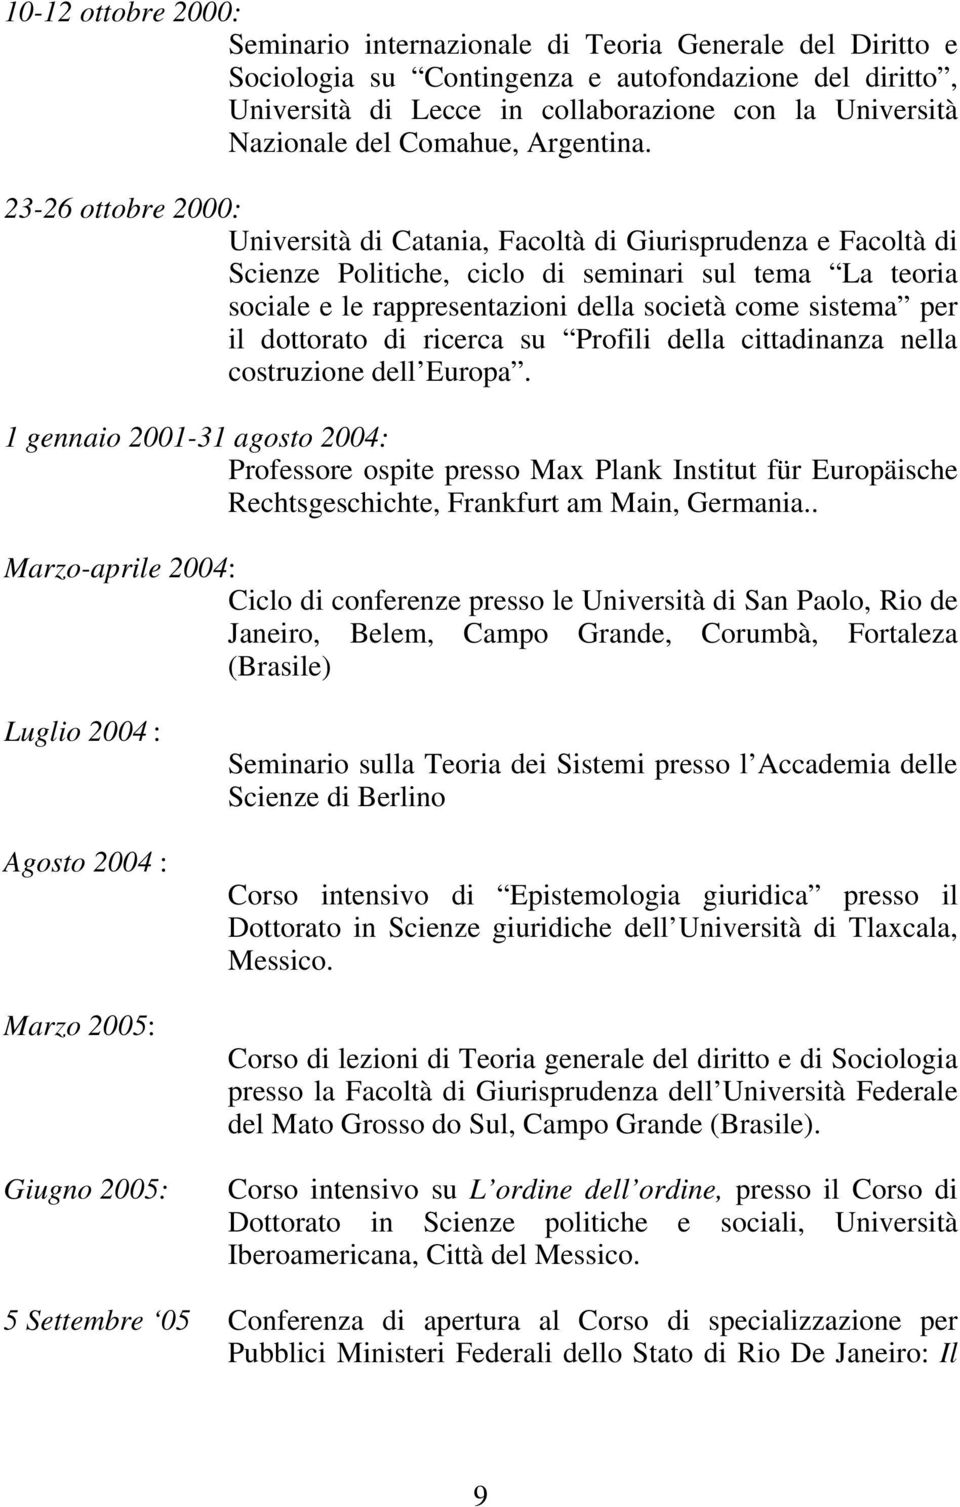 23-26 ottobre 2000: Università di Catania, Facoltà di Giurisprudenza e Facoltà di Scienze Politiche, ciclo di seminari sul tema La teoria sociale e le rappresentazioni della società come sistema per